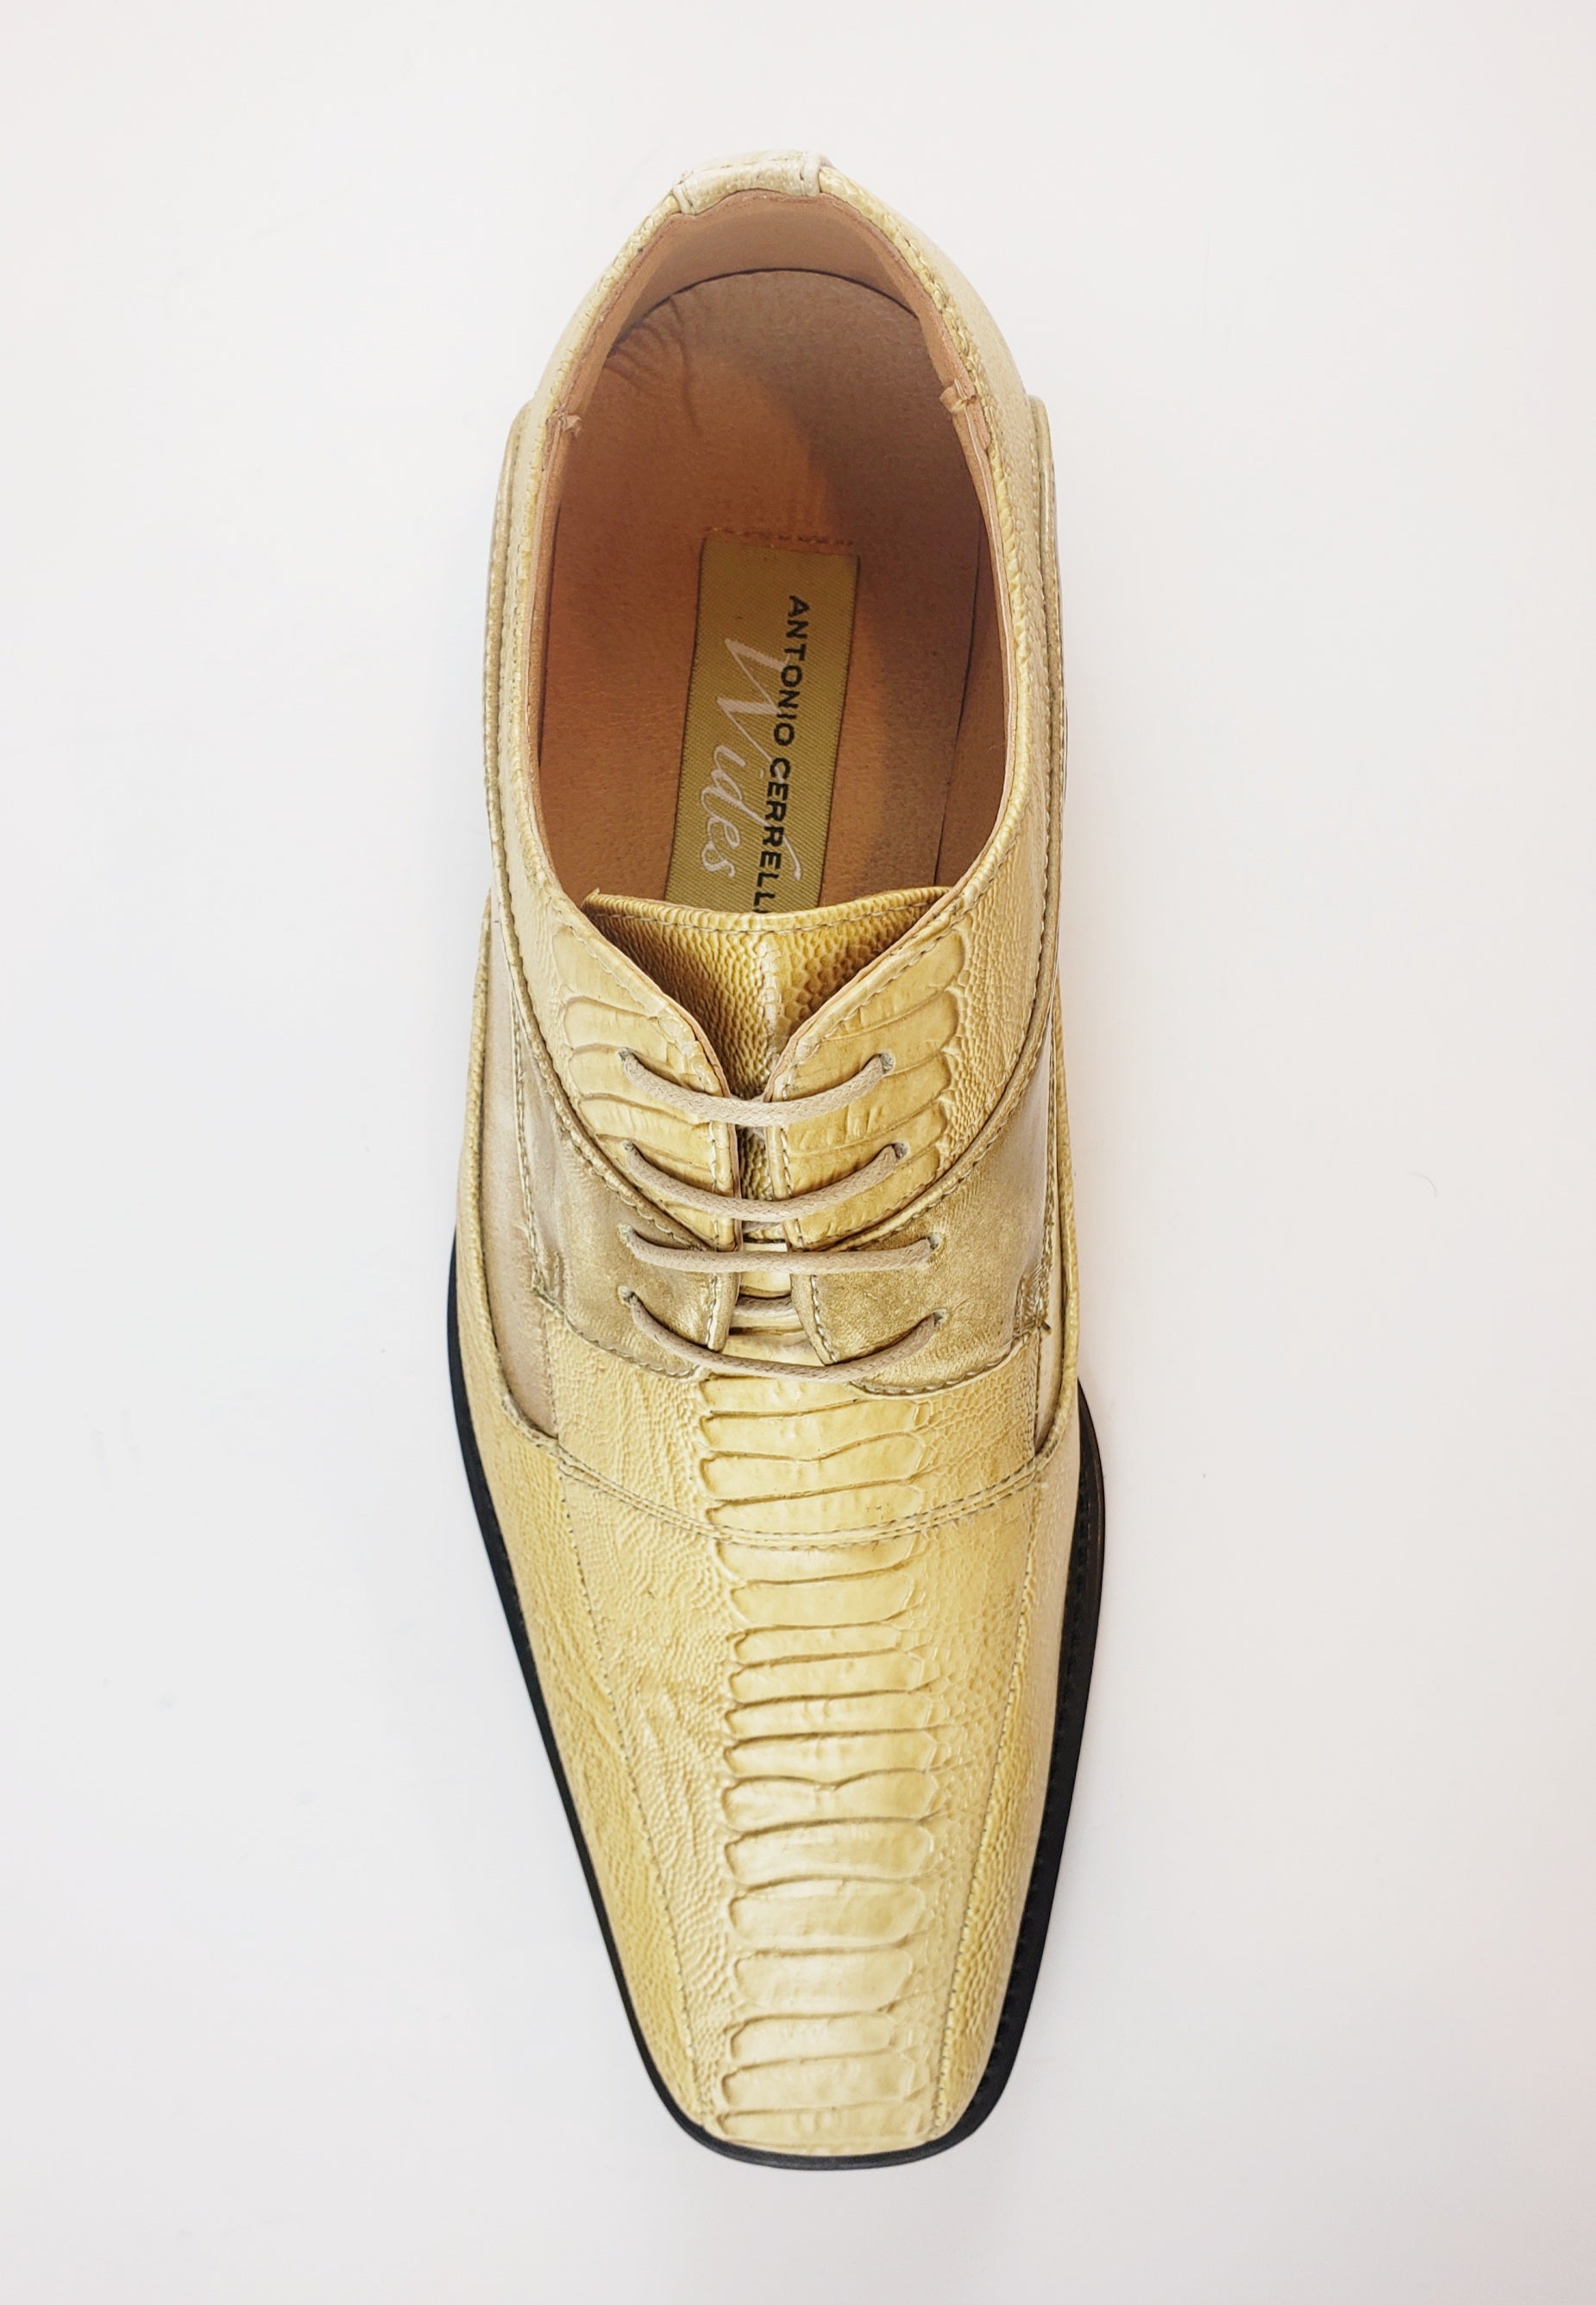 Antonio Cerrelli Lace up shoes